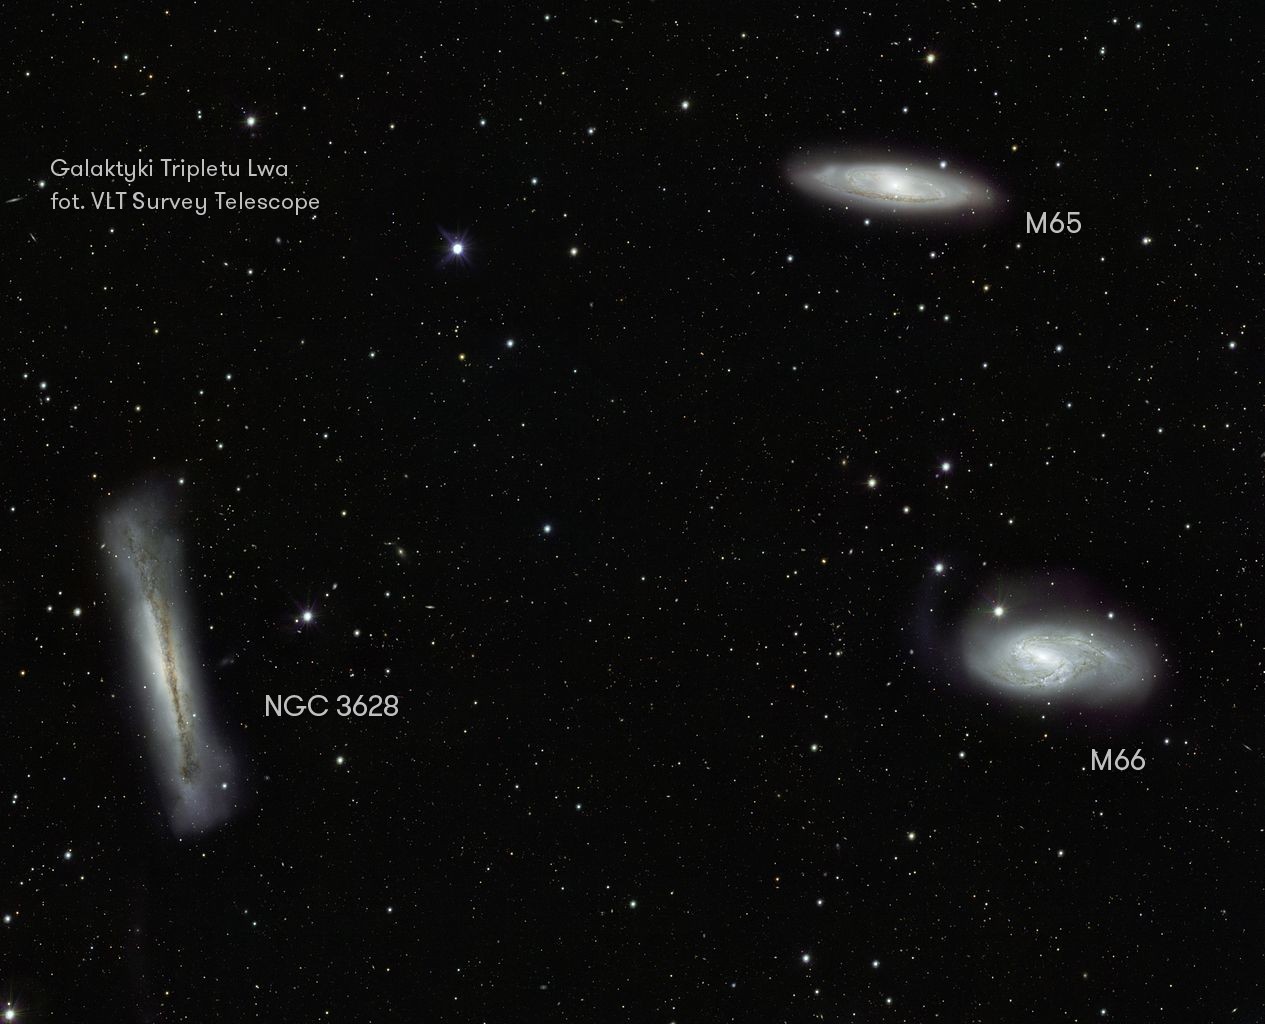 Triplet Lwa - zdjęcie pokazujące układ trzech galaktyk